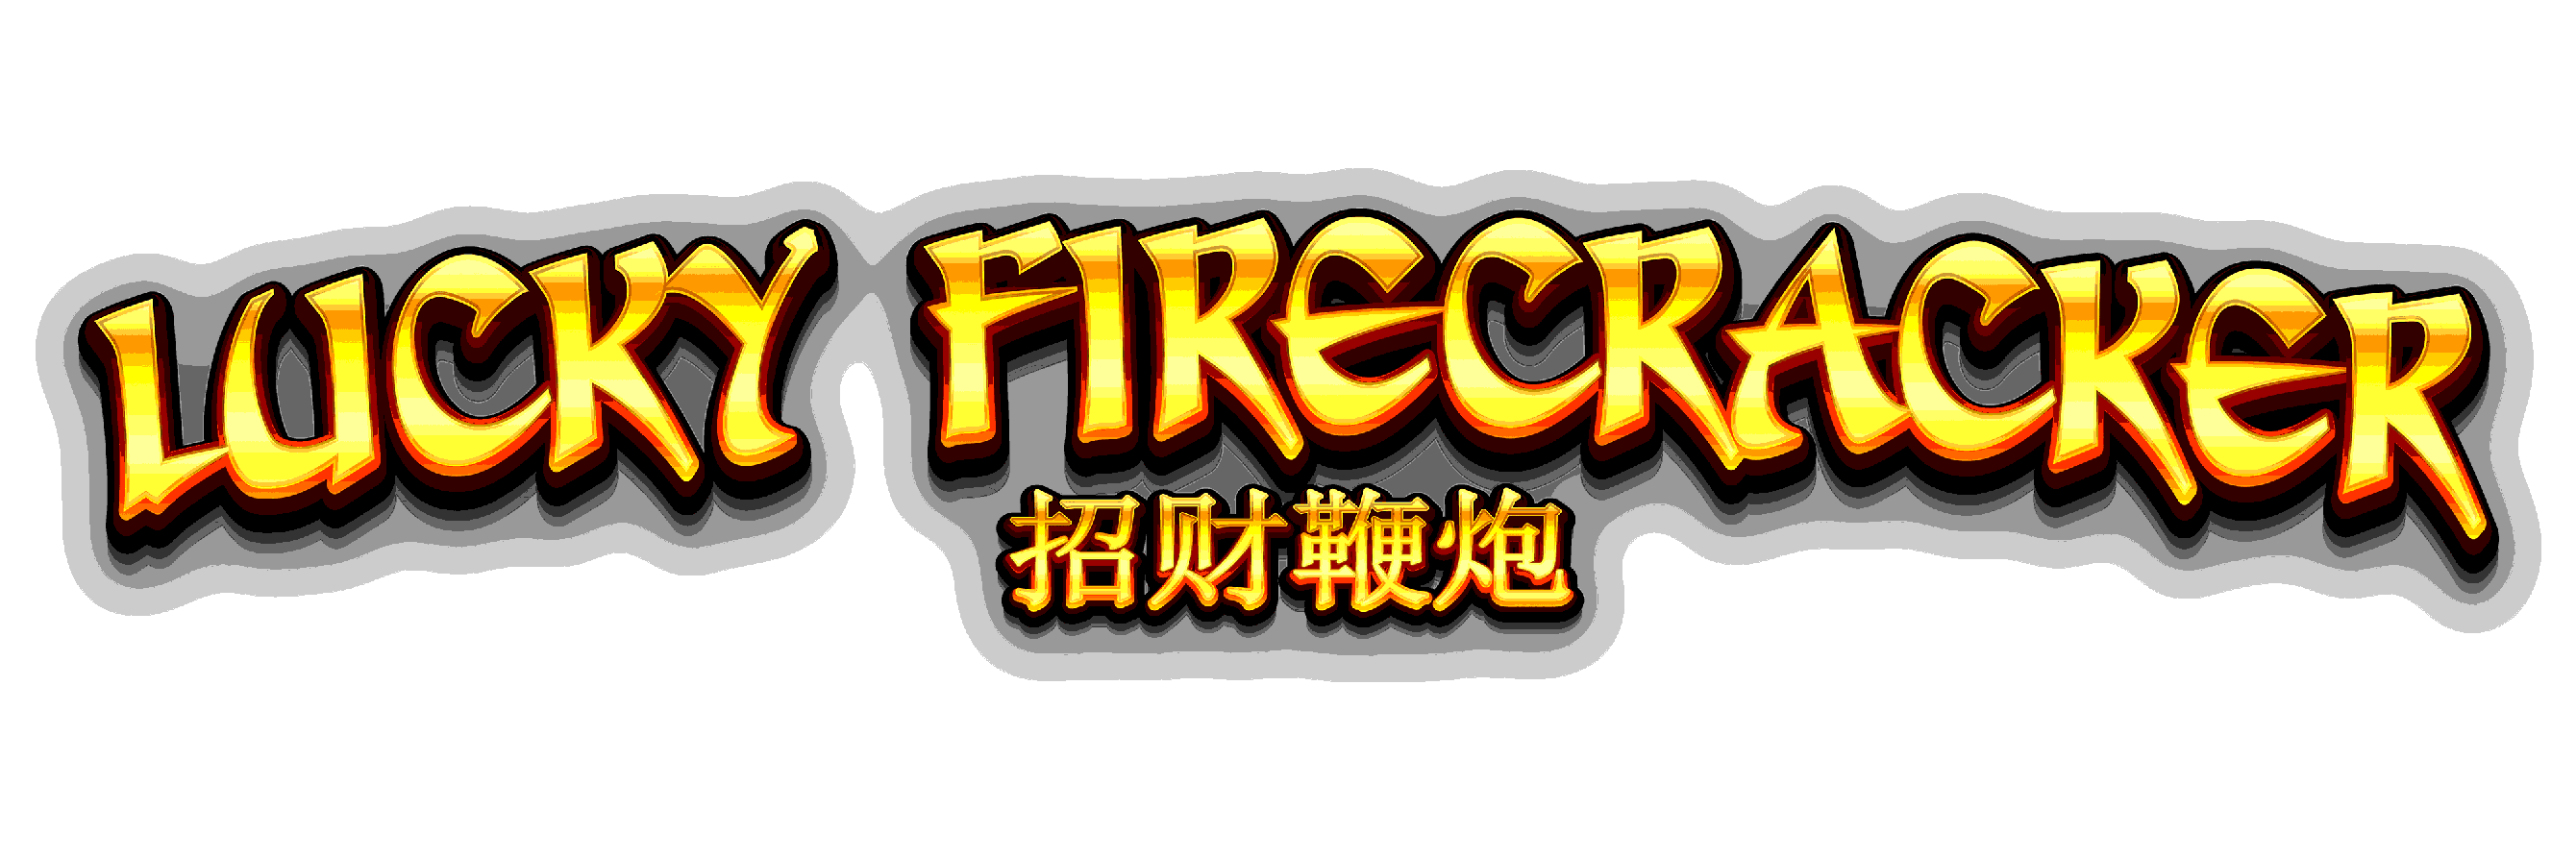 game logo Lucky Firecracker